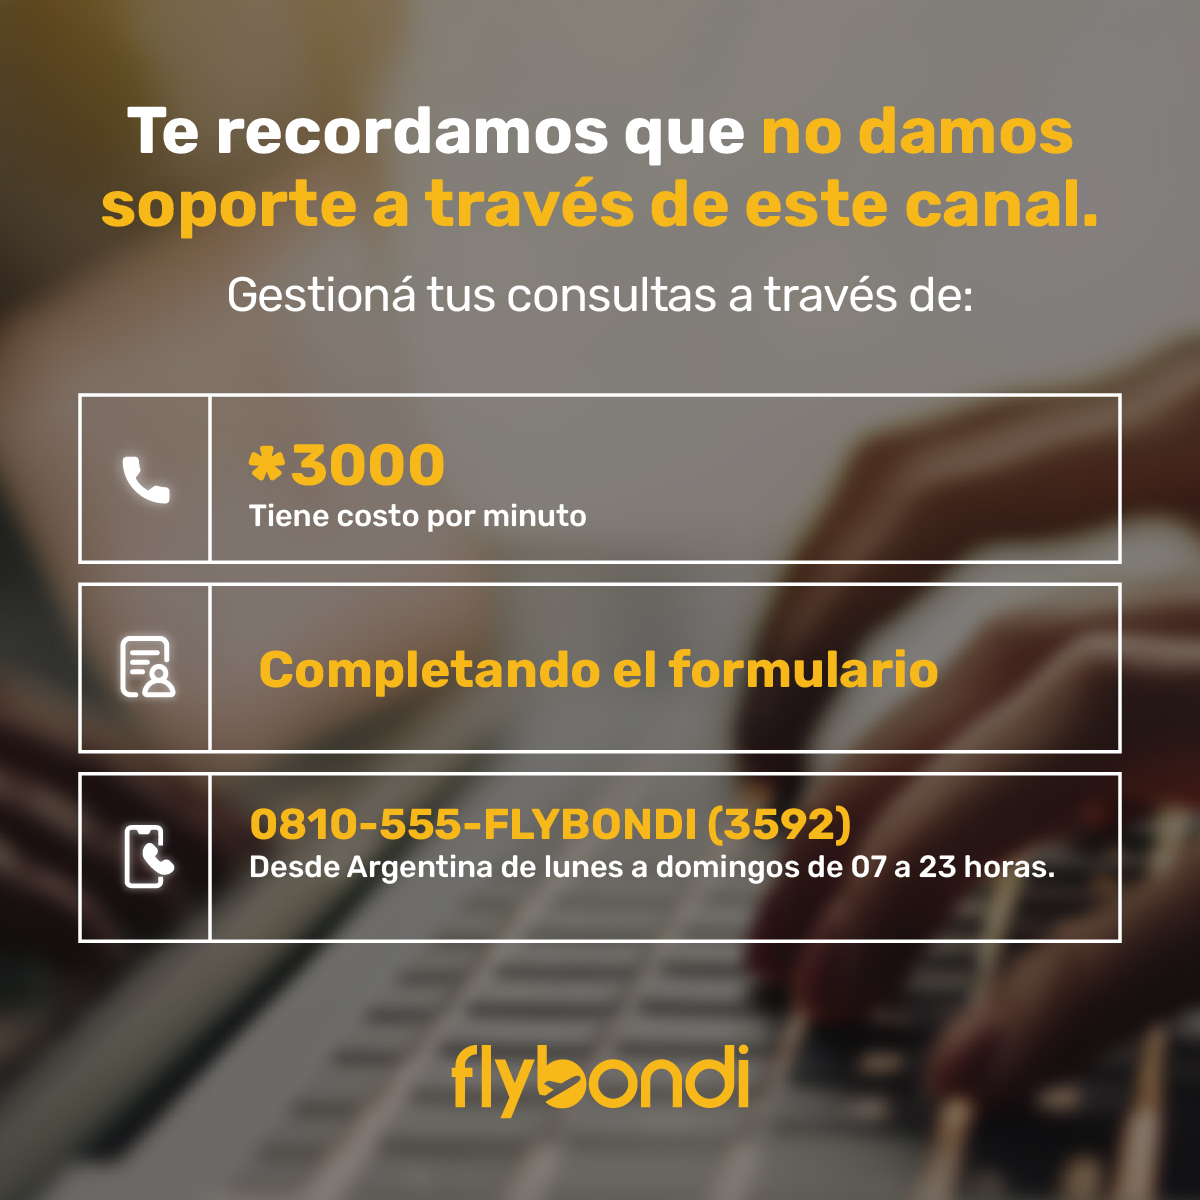 Conocé nuestros canales oficiales de atención 📞  

Completá el formulario 👉 bit.ly/3hUNEaX e iniciá una conversación con nuestro equipo 👩‍💻

⚠️Recordá que nuestras redes sociales no son un canal de atención al cliente ⚠️

#Flybondi #AtenciónAlCliente